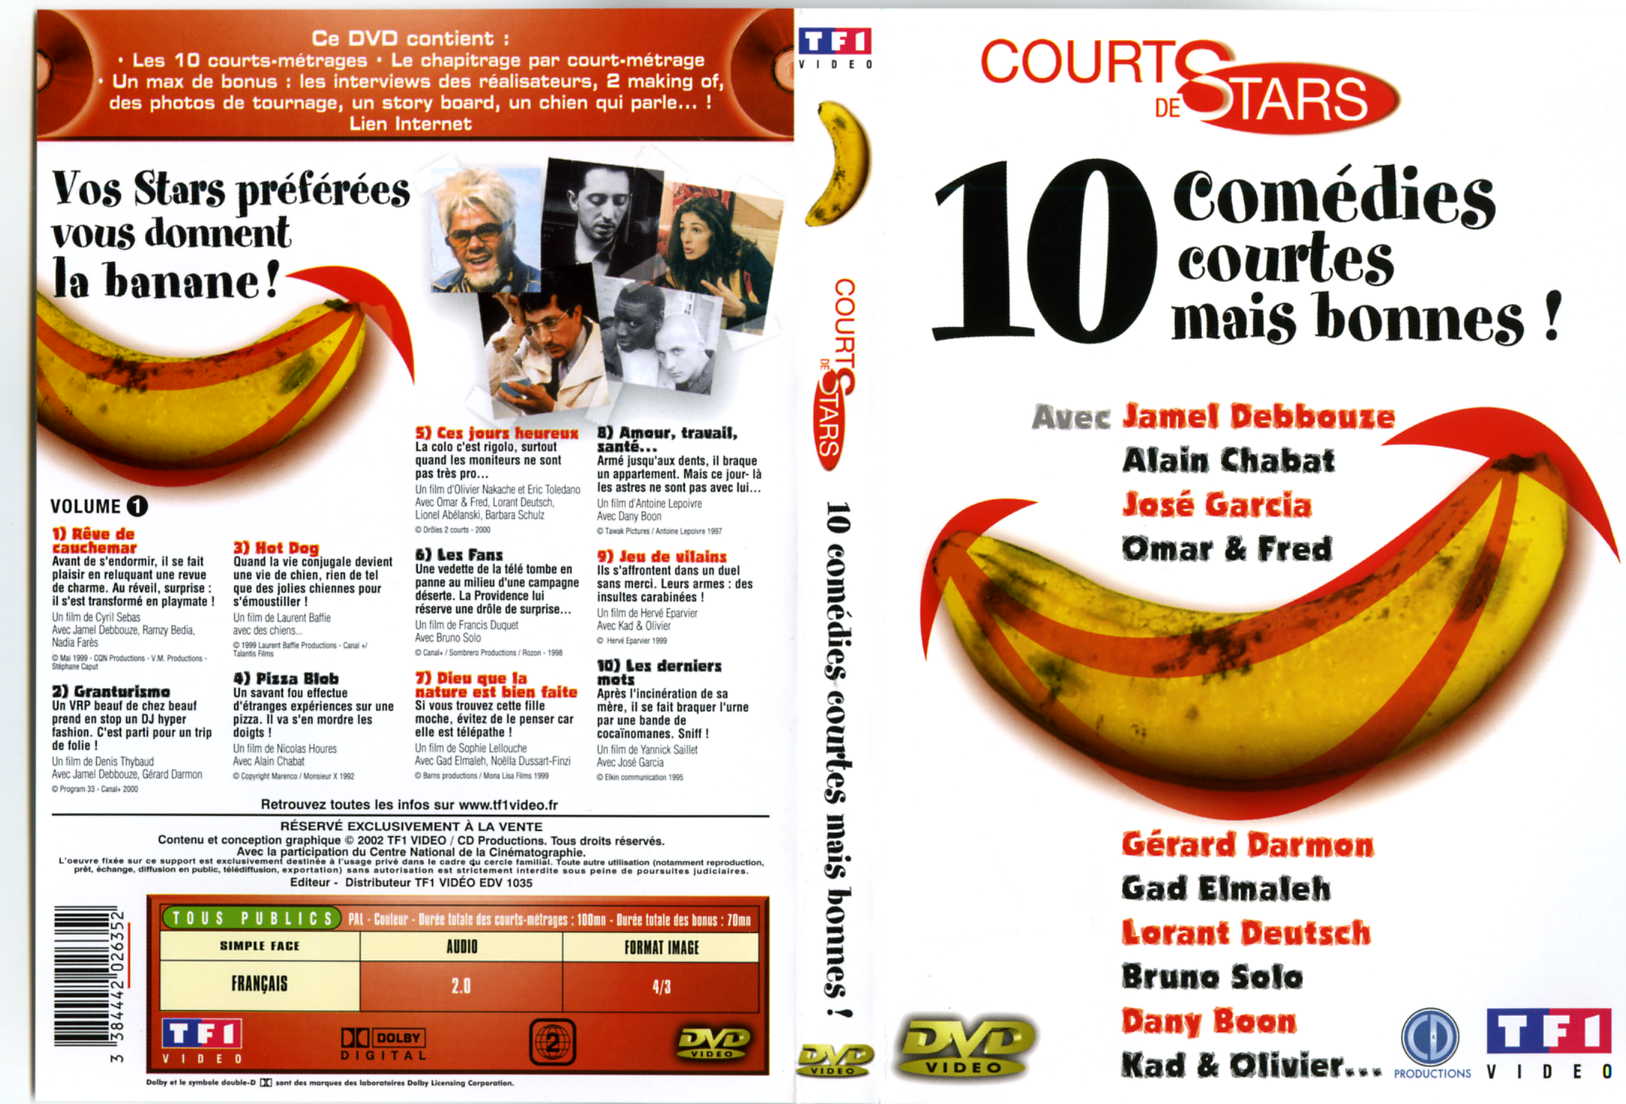 Jaquette DVD Court de stars - 10 comedies courtes mais bonnes